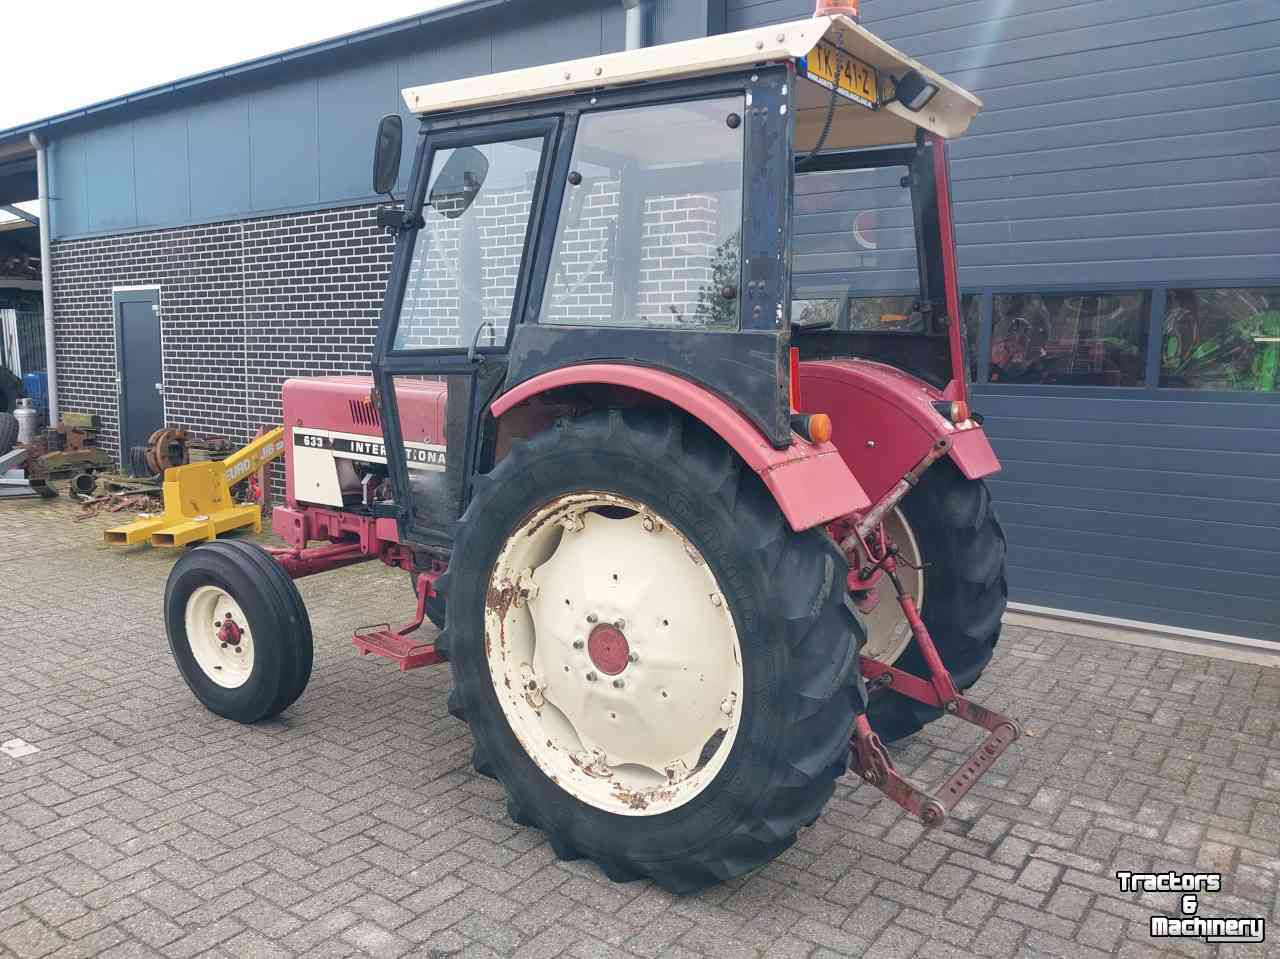 Schlepper / Traktoren International 633